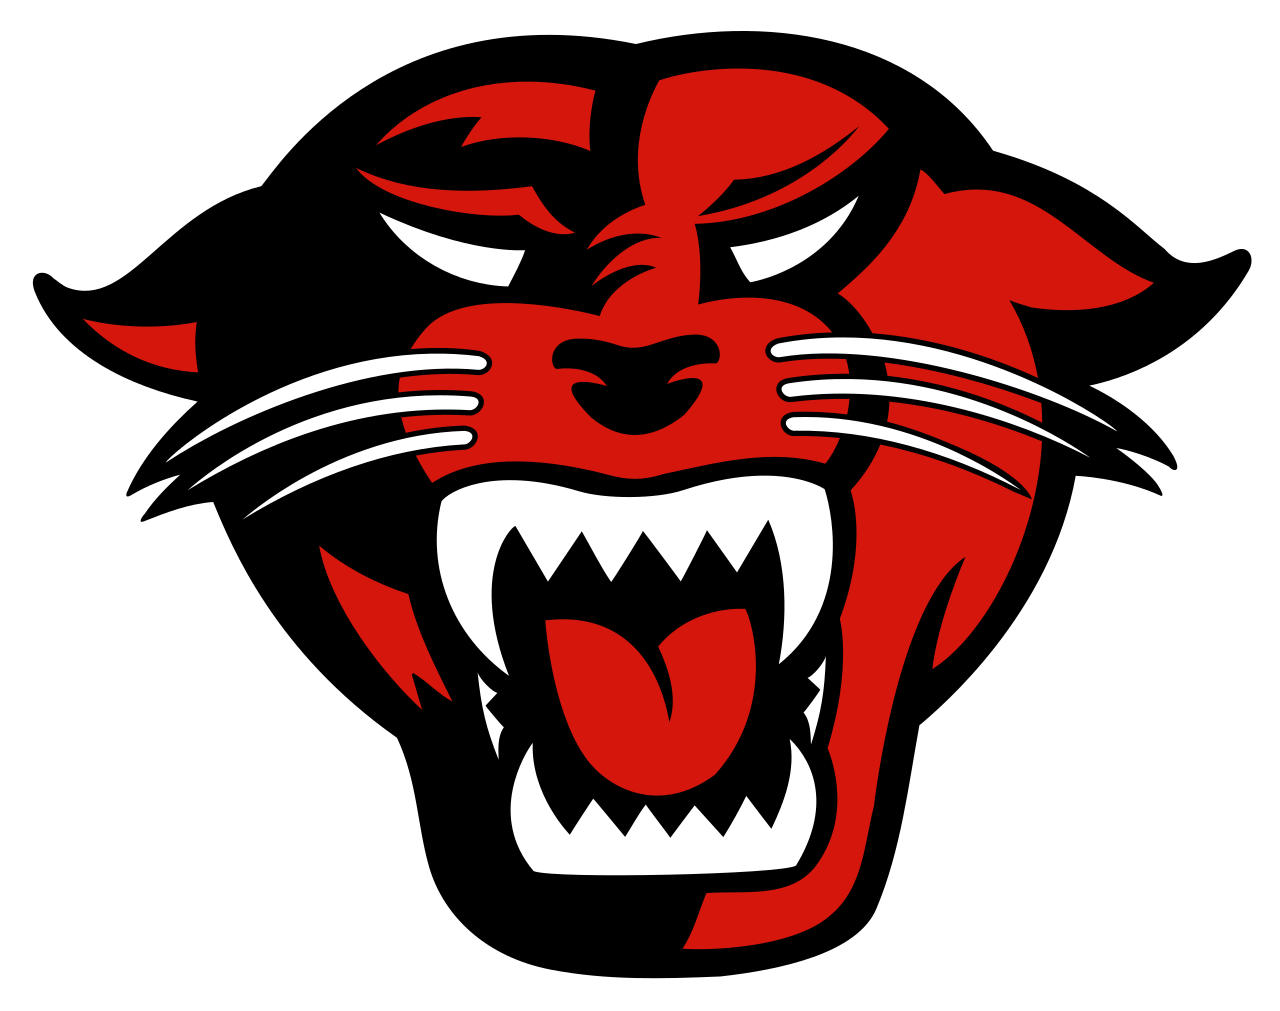 Carolina Panthers Logo PNG Image HD